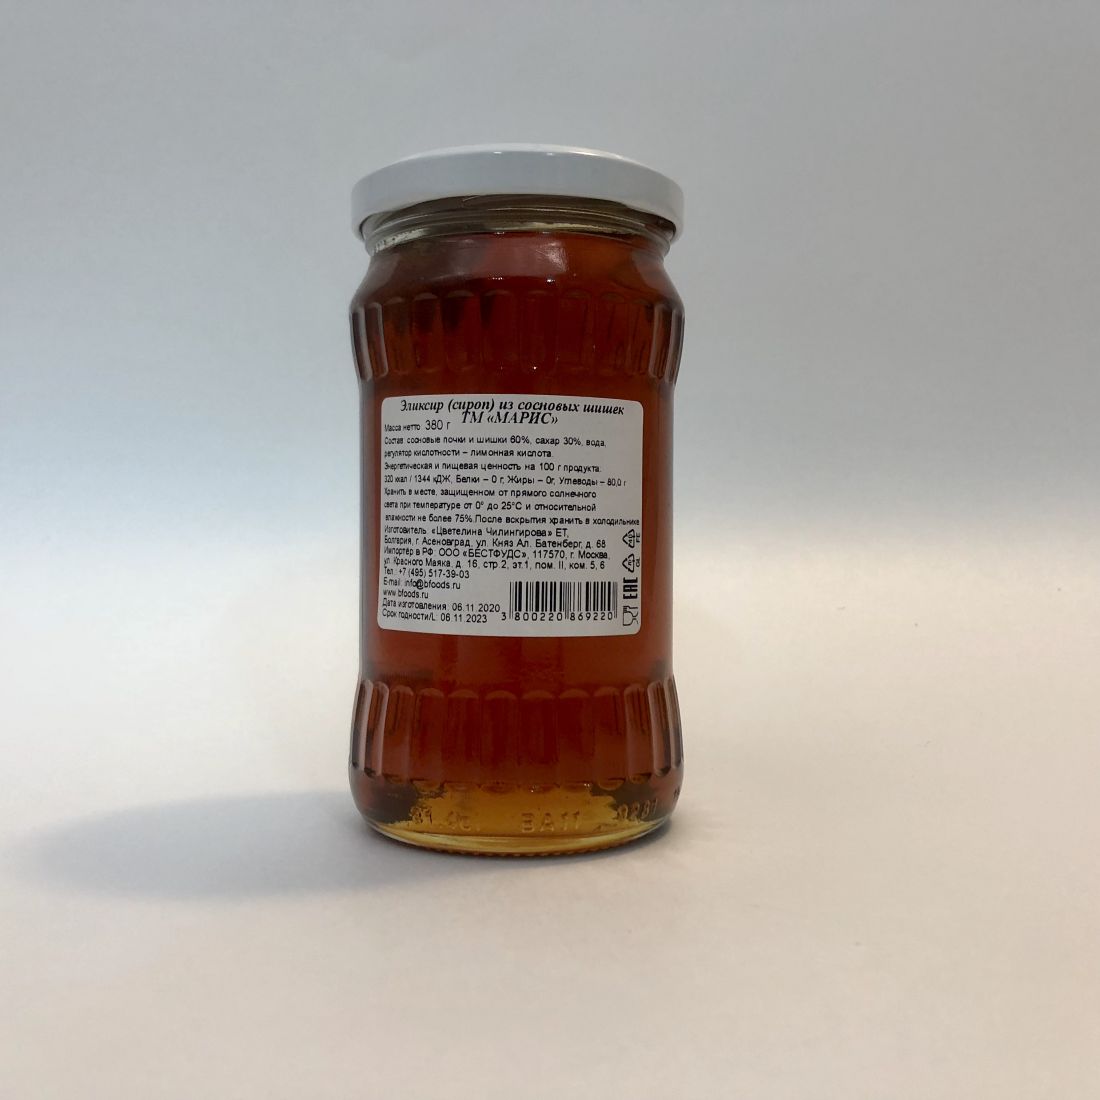 Эликсир (сироп) из сосновых шишек - 380 гр